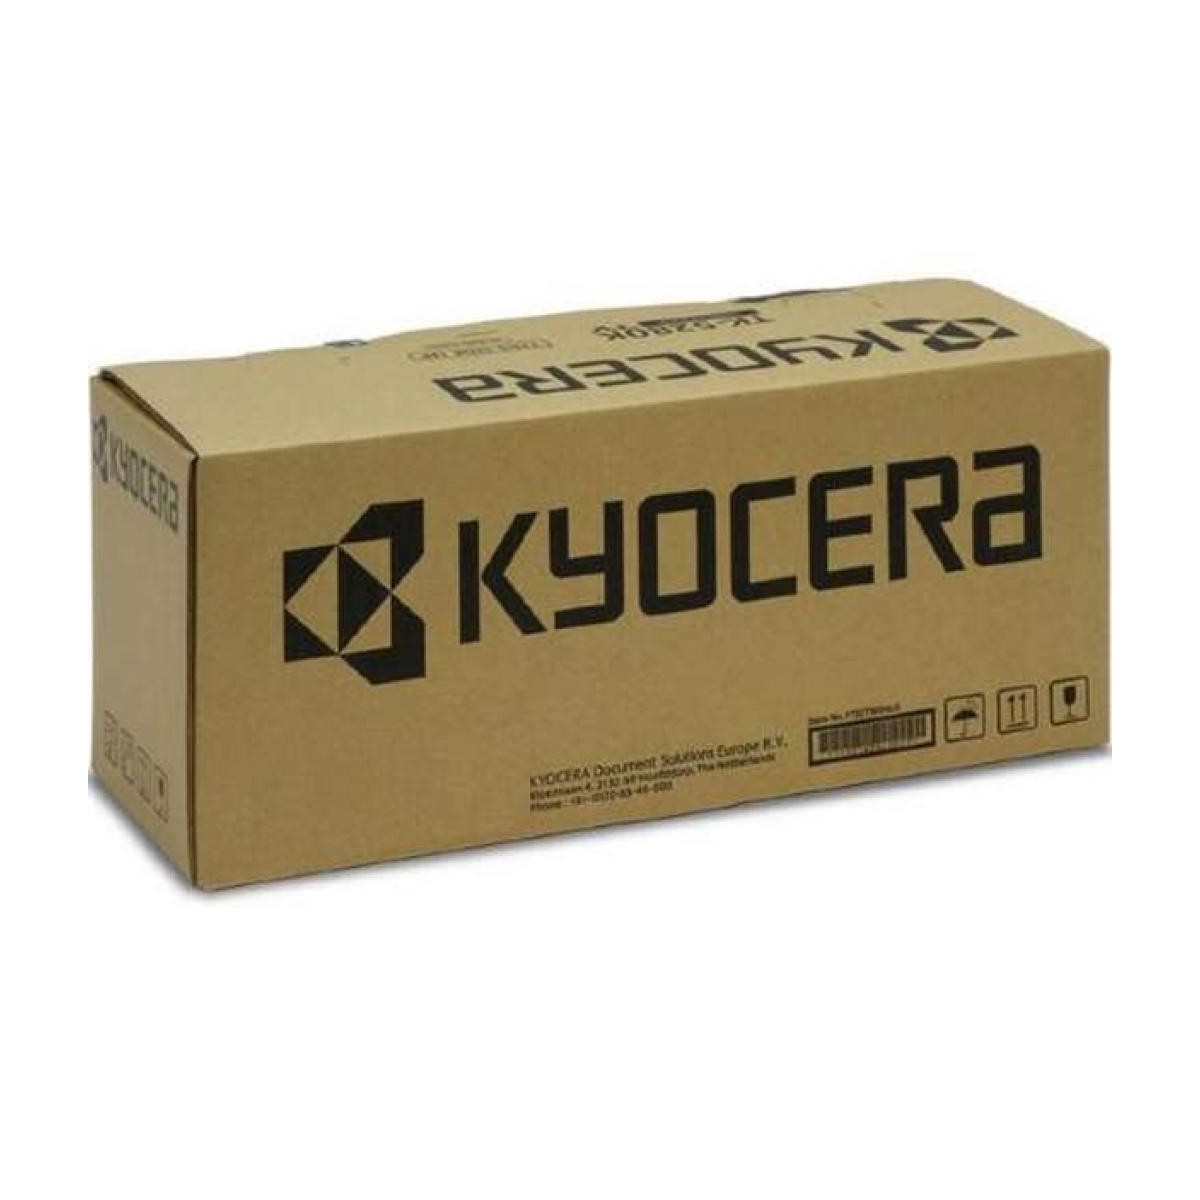 Kyocera MK-825B - MK B KM-C2520/25E/C3225/32/32E/C4035E - 300,000 sheet